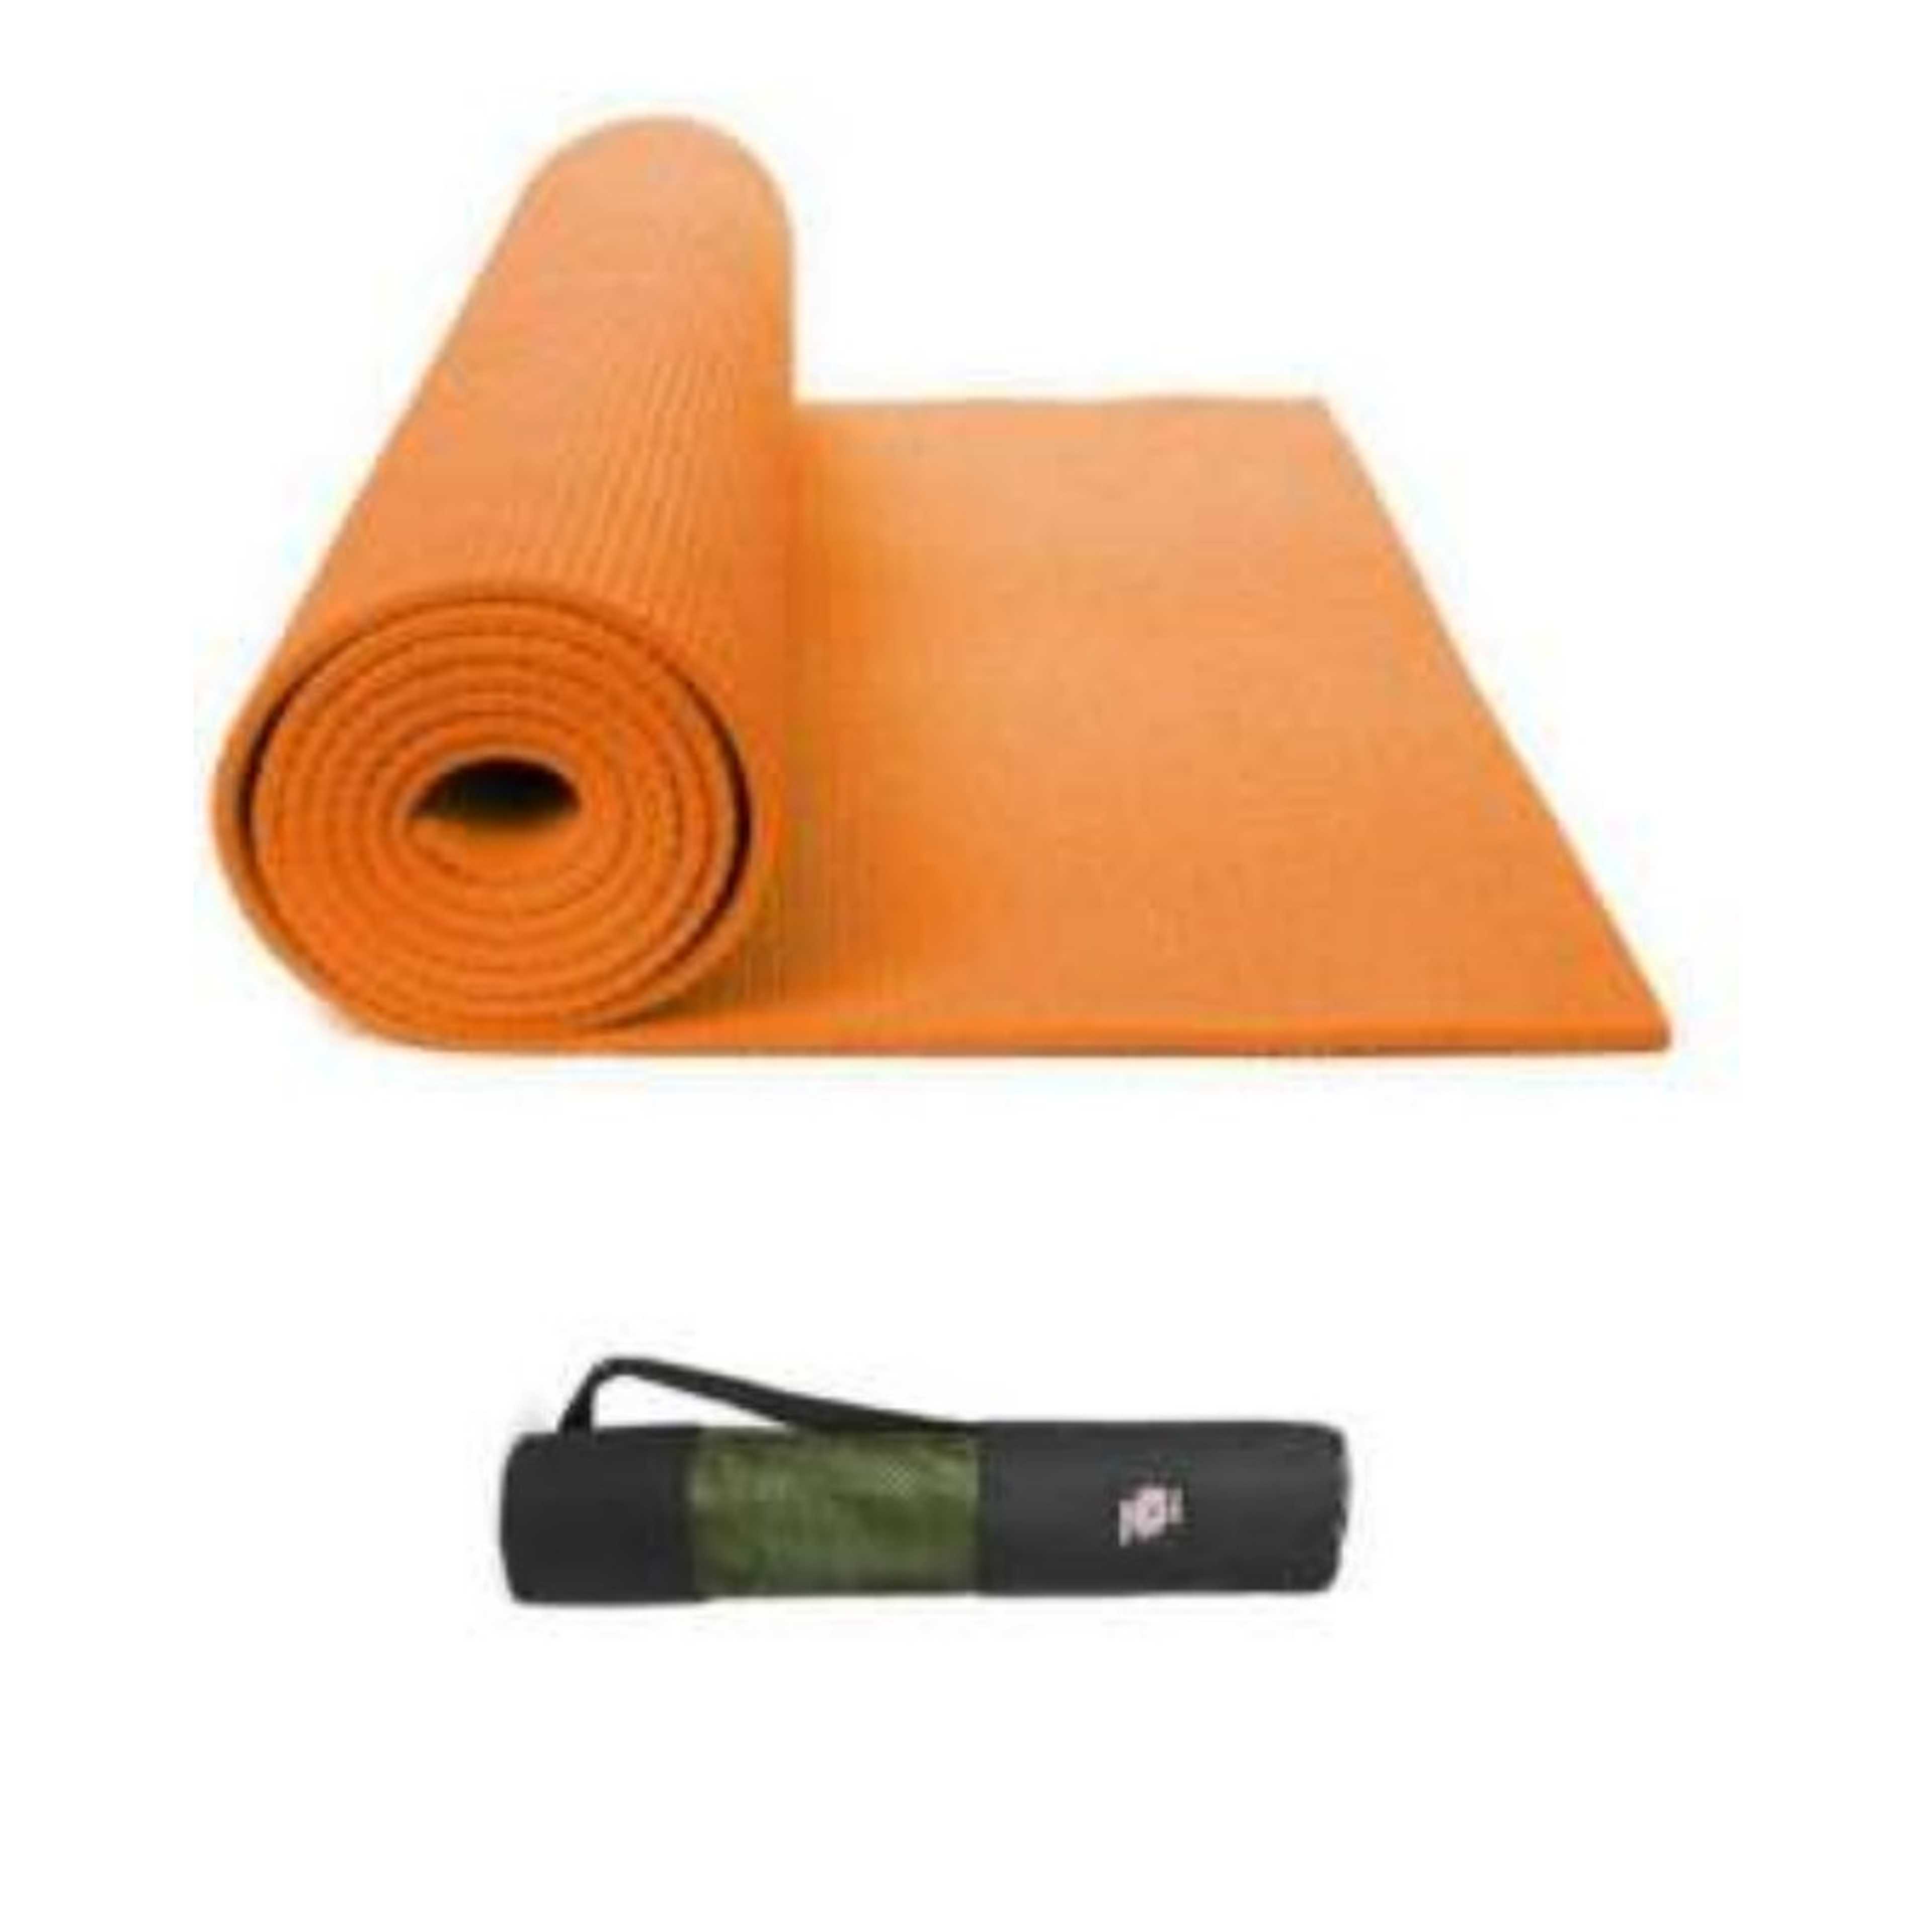 Yoga & Gym Mat With Bag